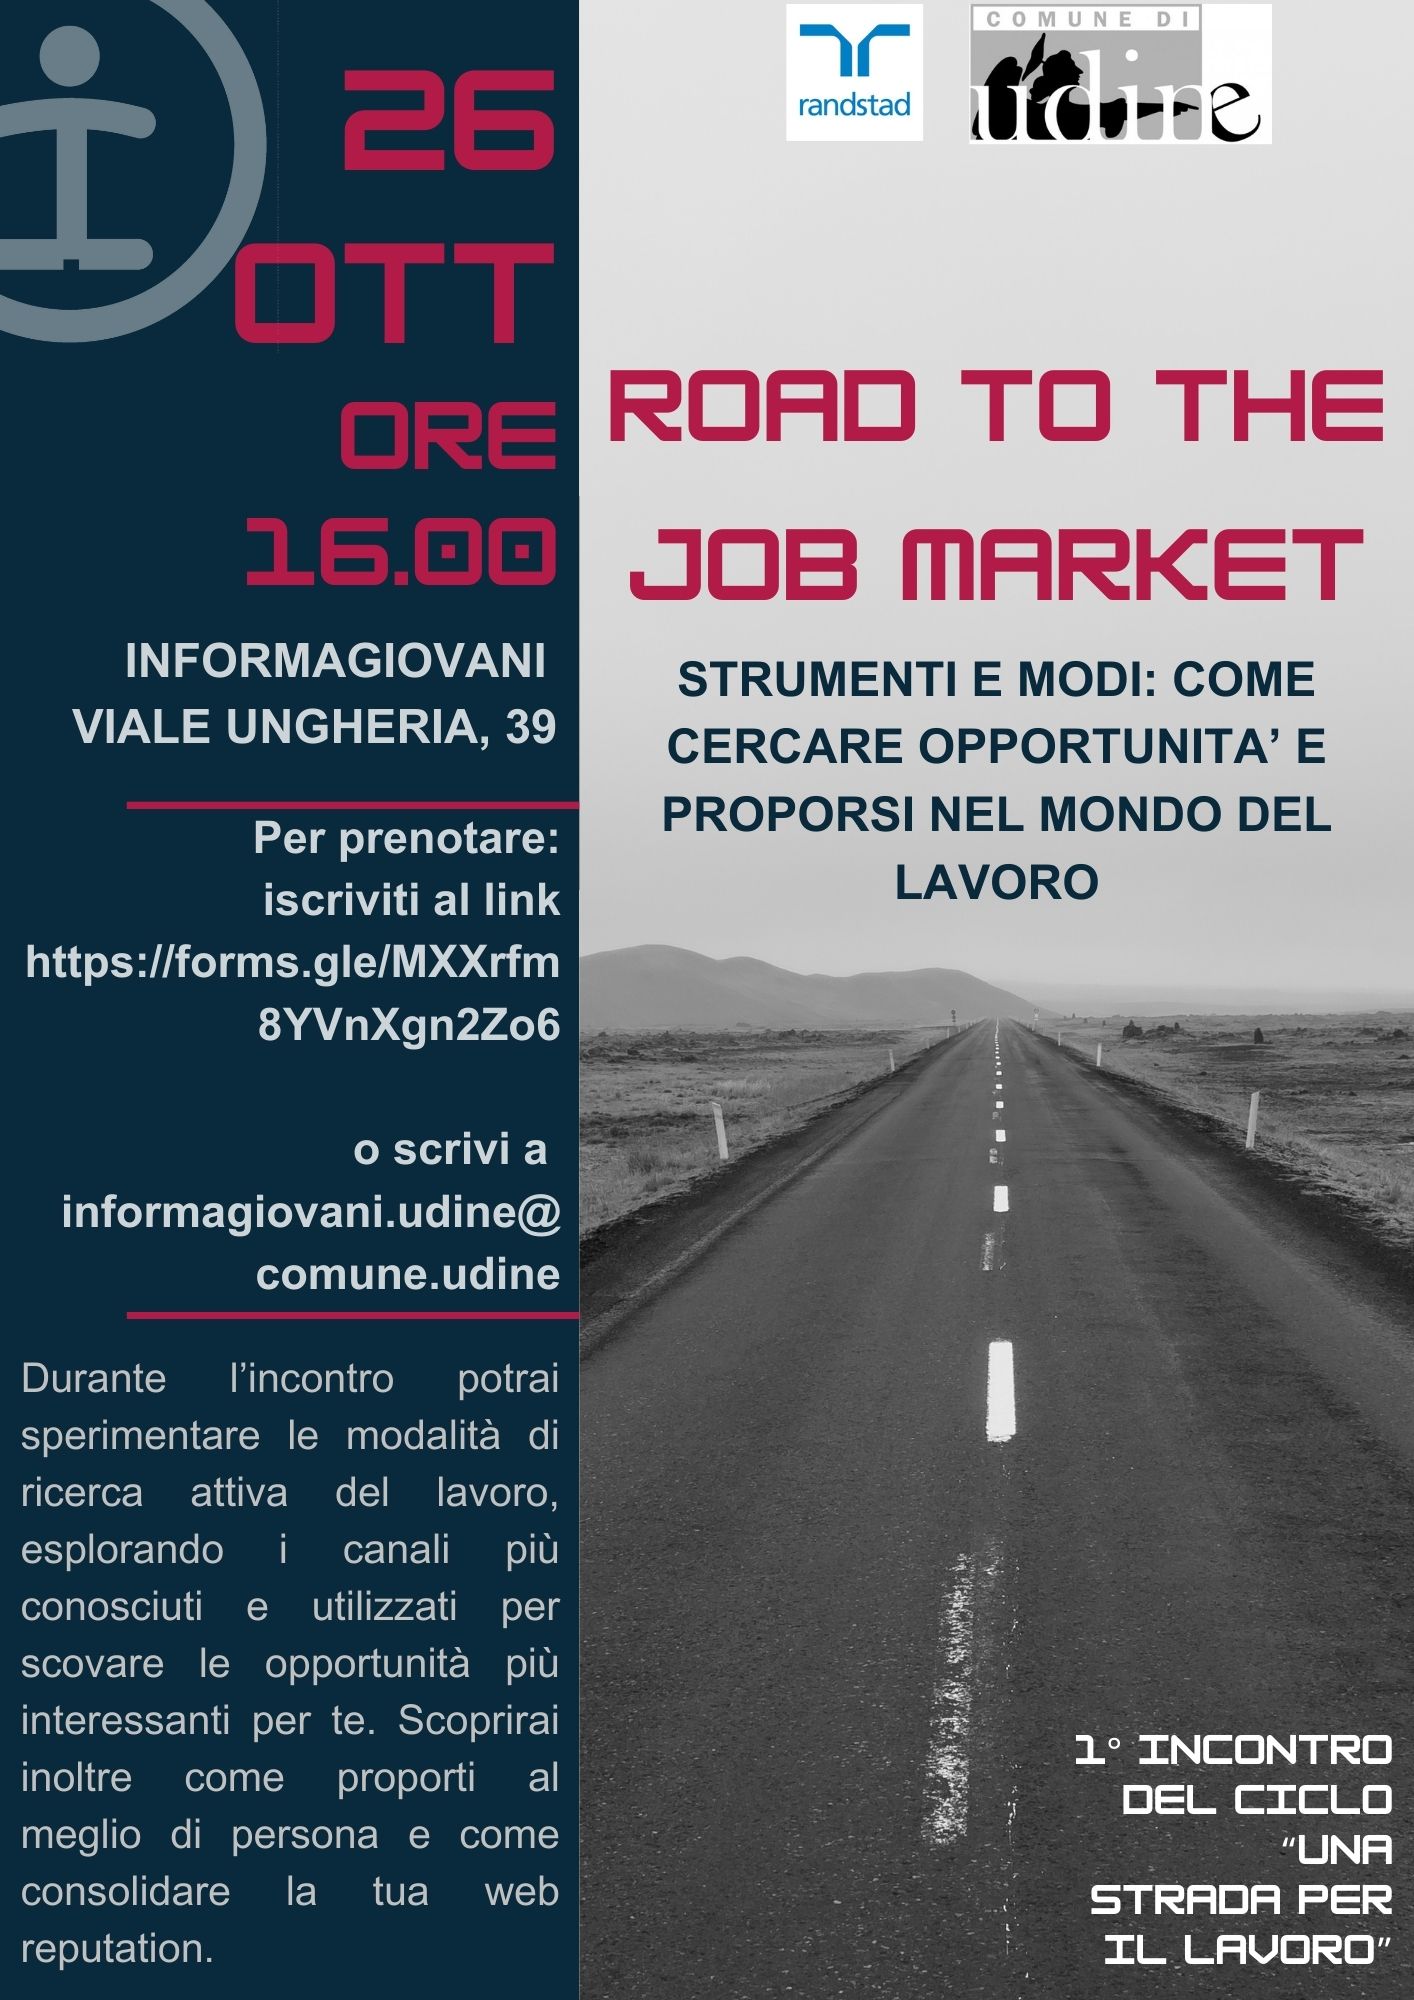 "Una strada per il lavoro" - 1° incontro del ciclo di appuntamenti c/o InformaGiovani di Udine